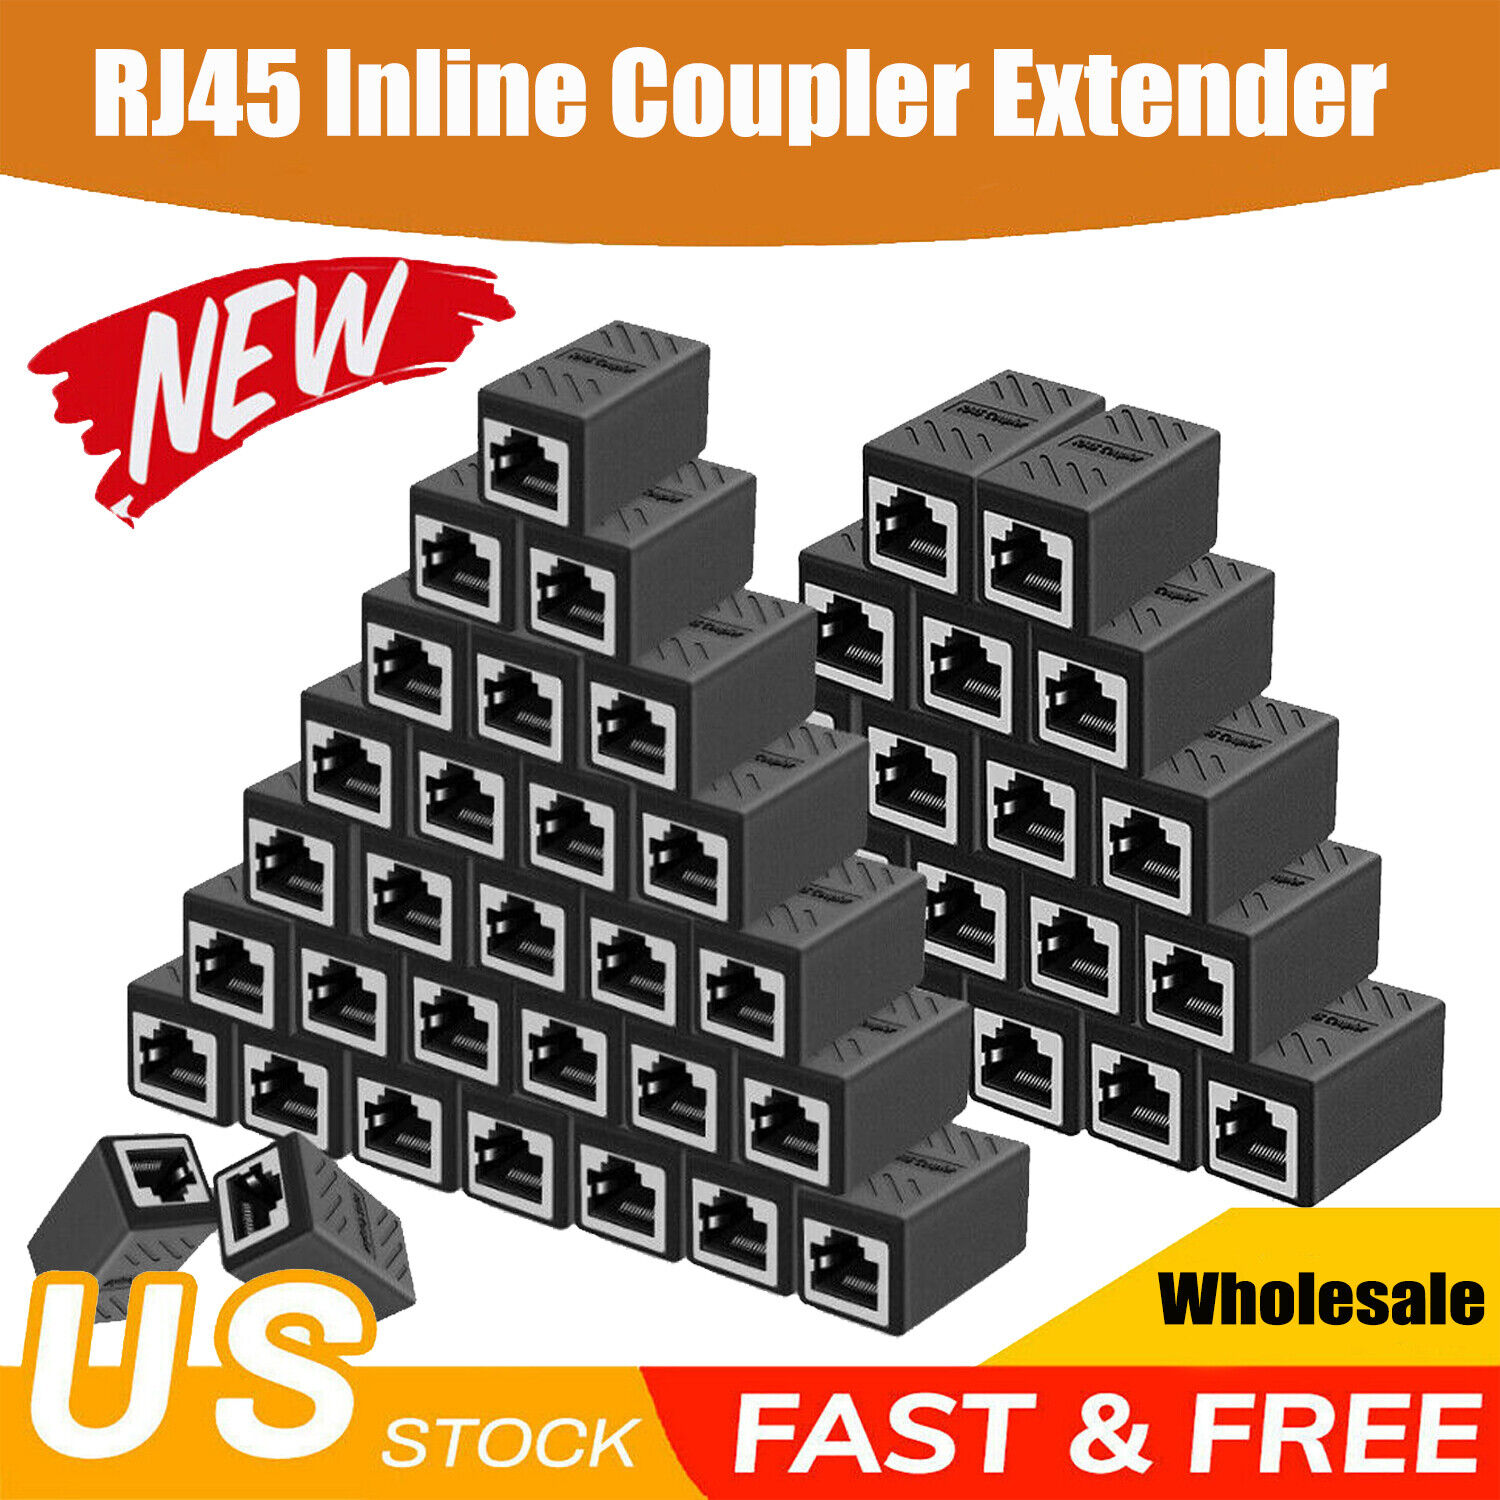 RJ45 Coupler Extender Ethernet Network LAN Cat5/5e/6/7 Cable Joiner Adapter Lot